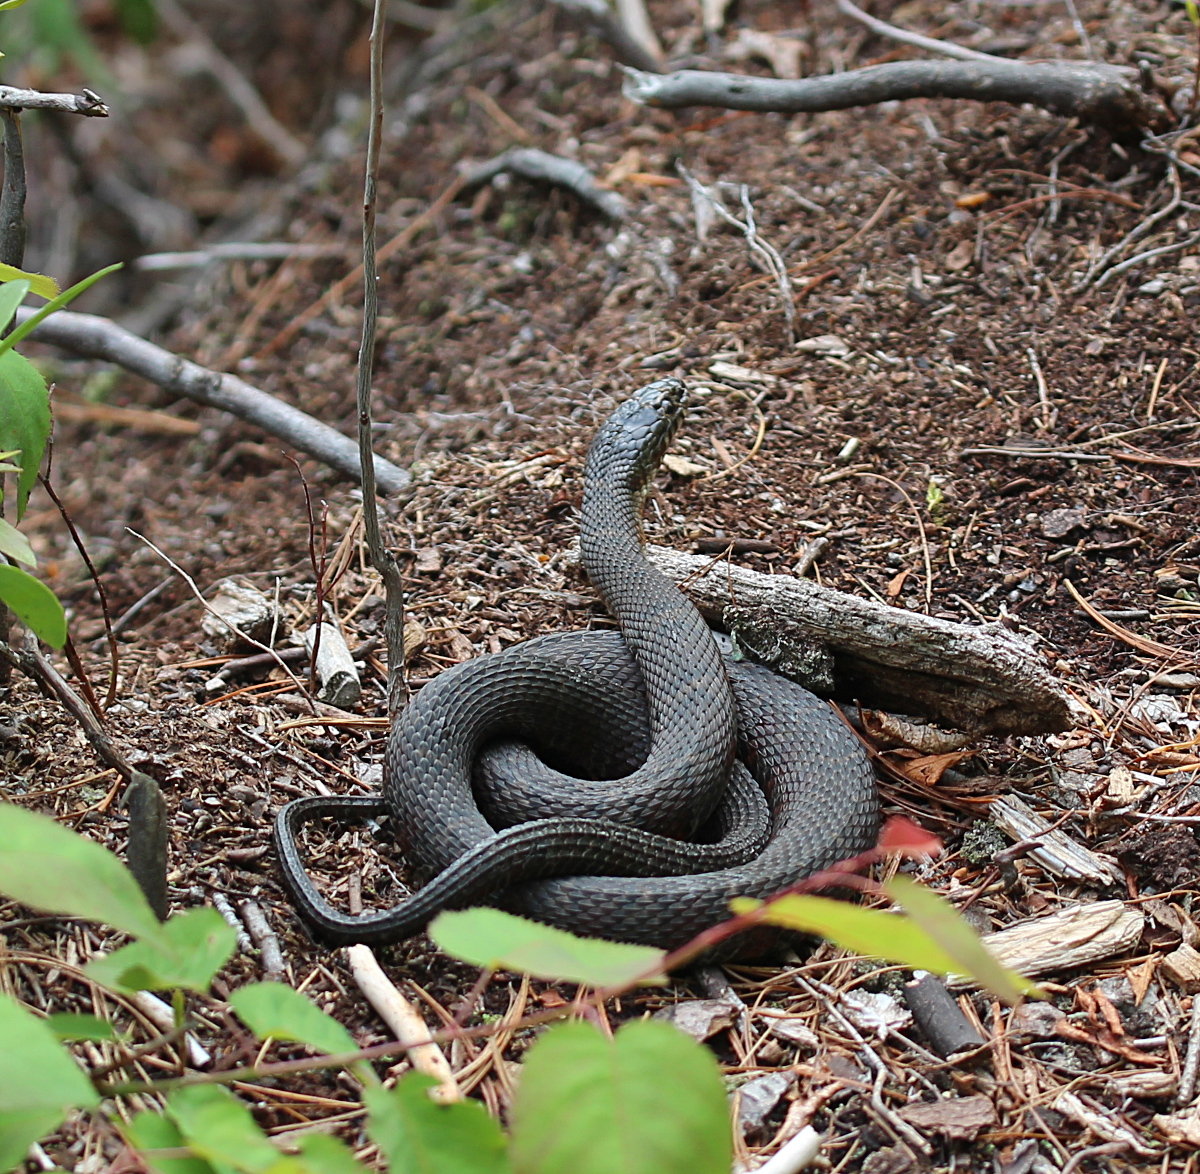 Black snake, coiled